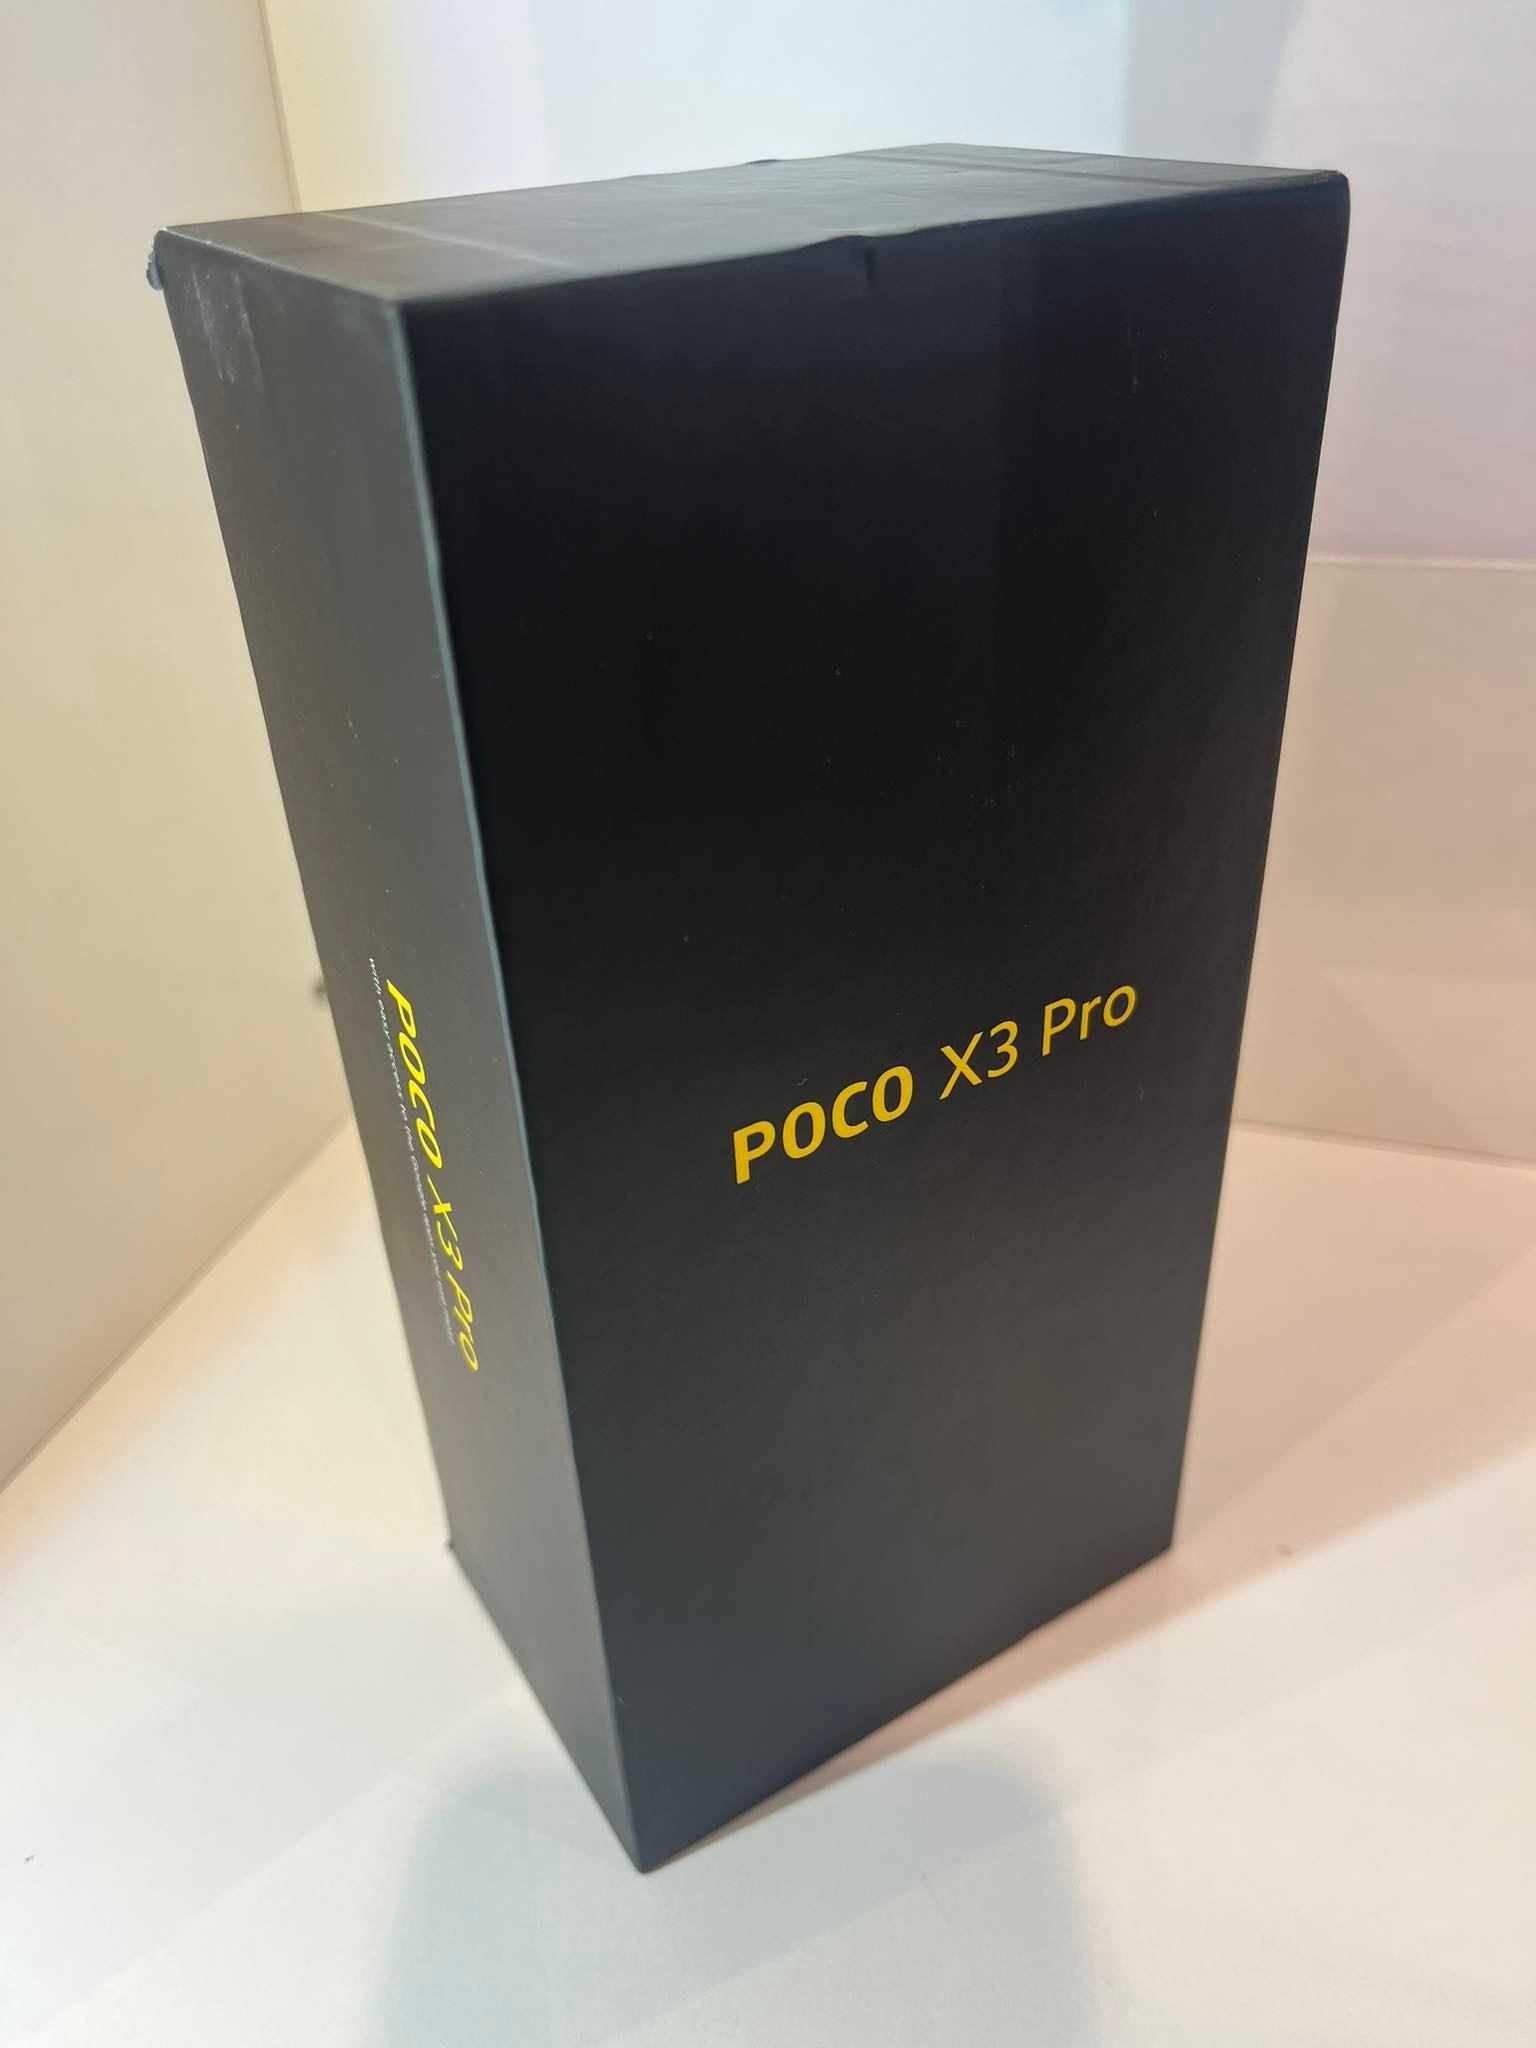 POCO X3 PRO 6/128GB Port Łódź Telakces ul. Pabianicka 245